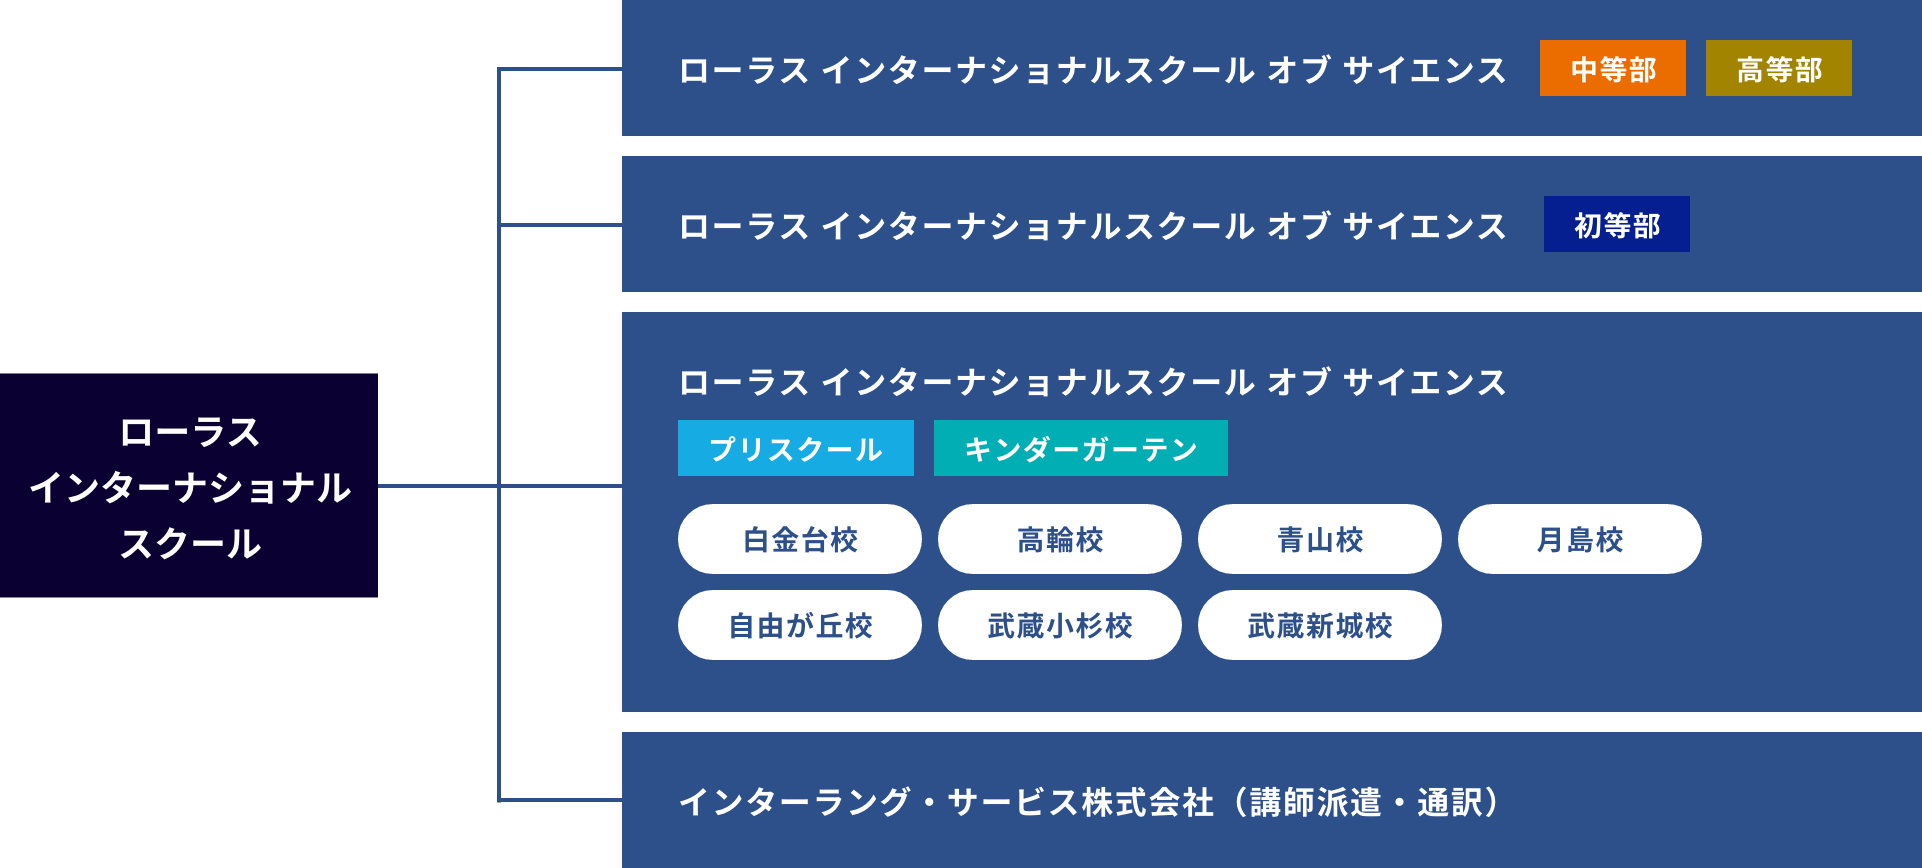 Laurus International Co., Ltd/Shirokanedai/Takanawa/Aoyama/Tsukishima/Den-en-chofu/Musashi-Kosugi/Musashi-Shinjo